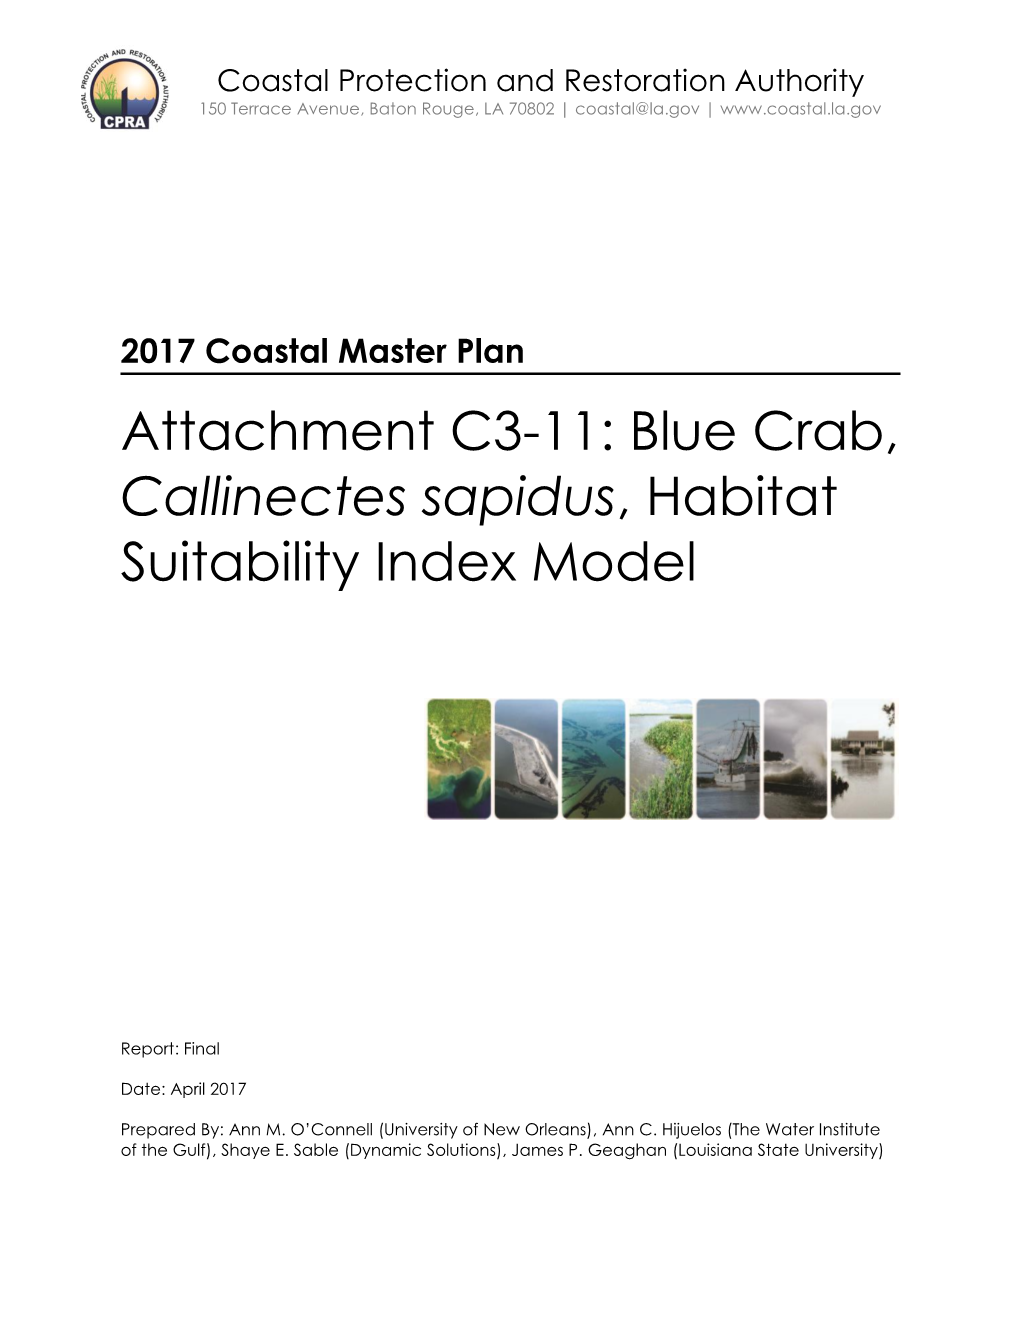 Attachment C3-11: Blue Crab, Callinectes Sapidus, Habitat Suitability Index Model